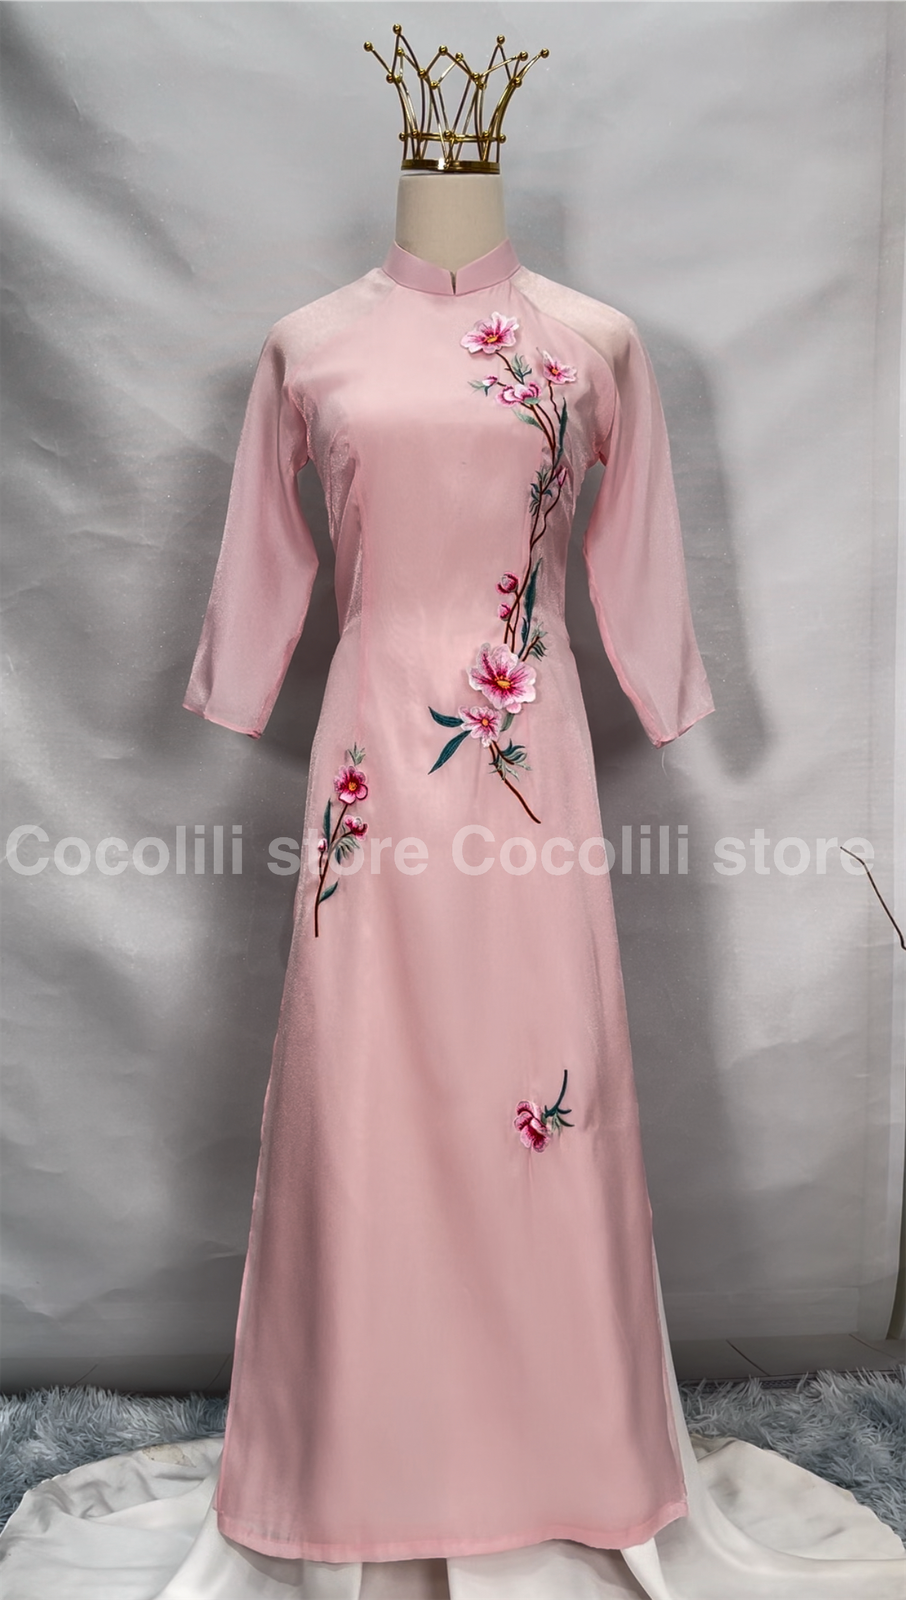 M146 241 - Áo dài Tơ 4 tà thêu hoa Hạ nhiên hồng +quần ngọc trai hồng sen